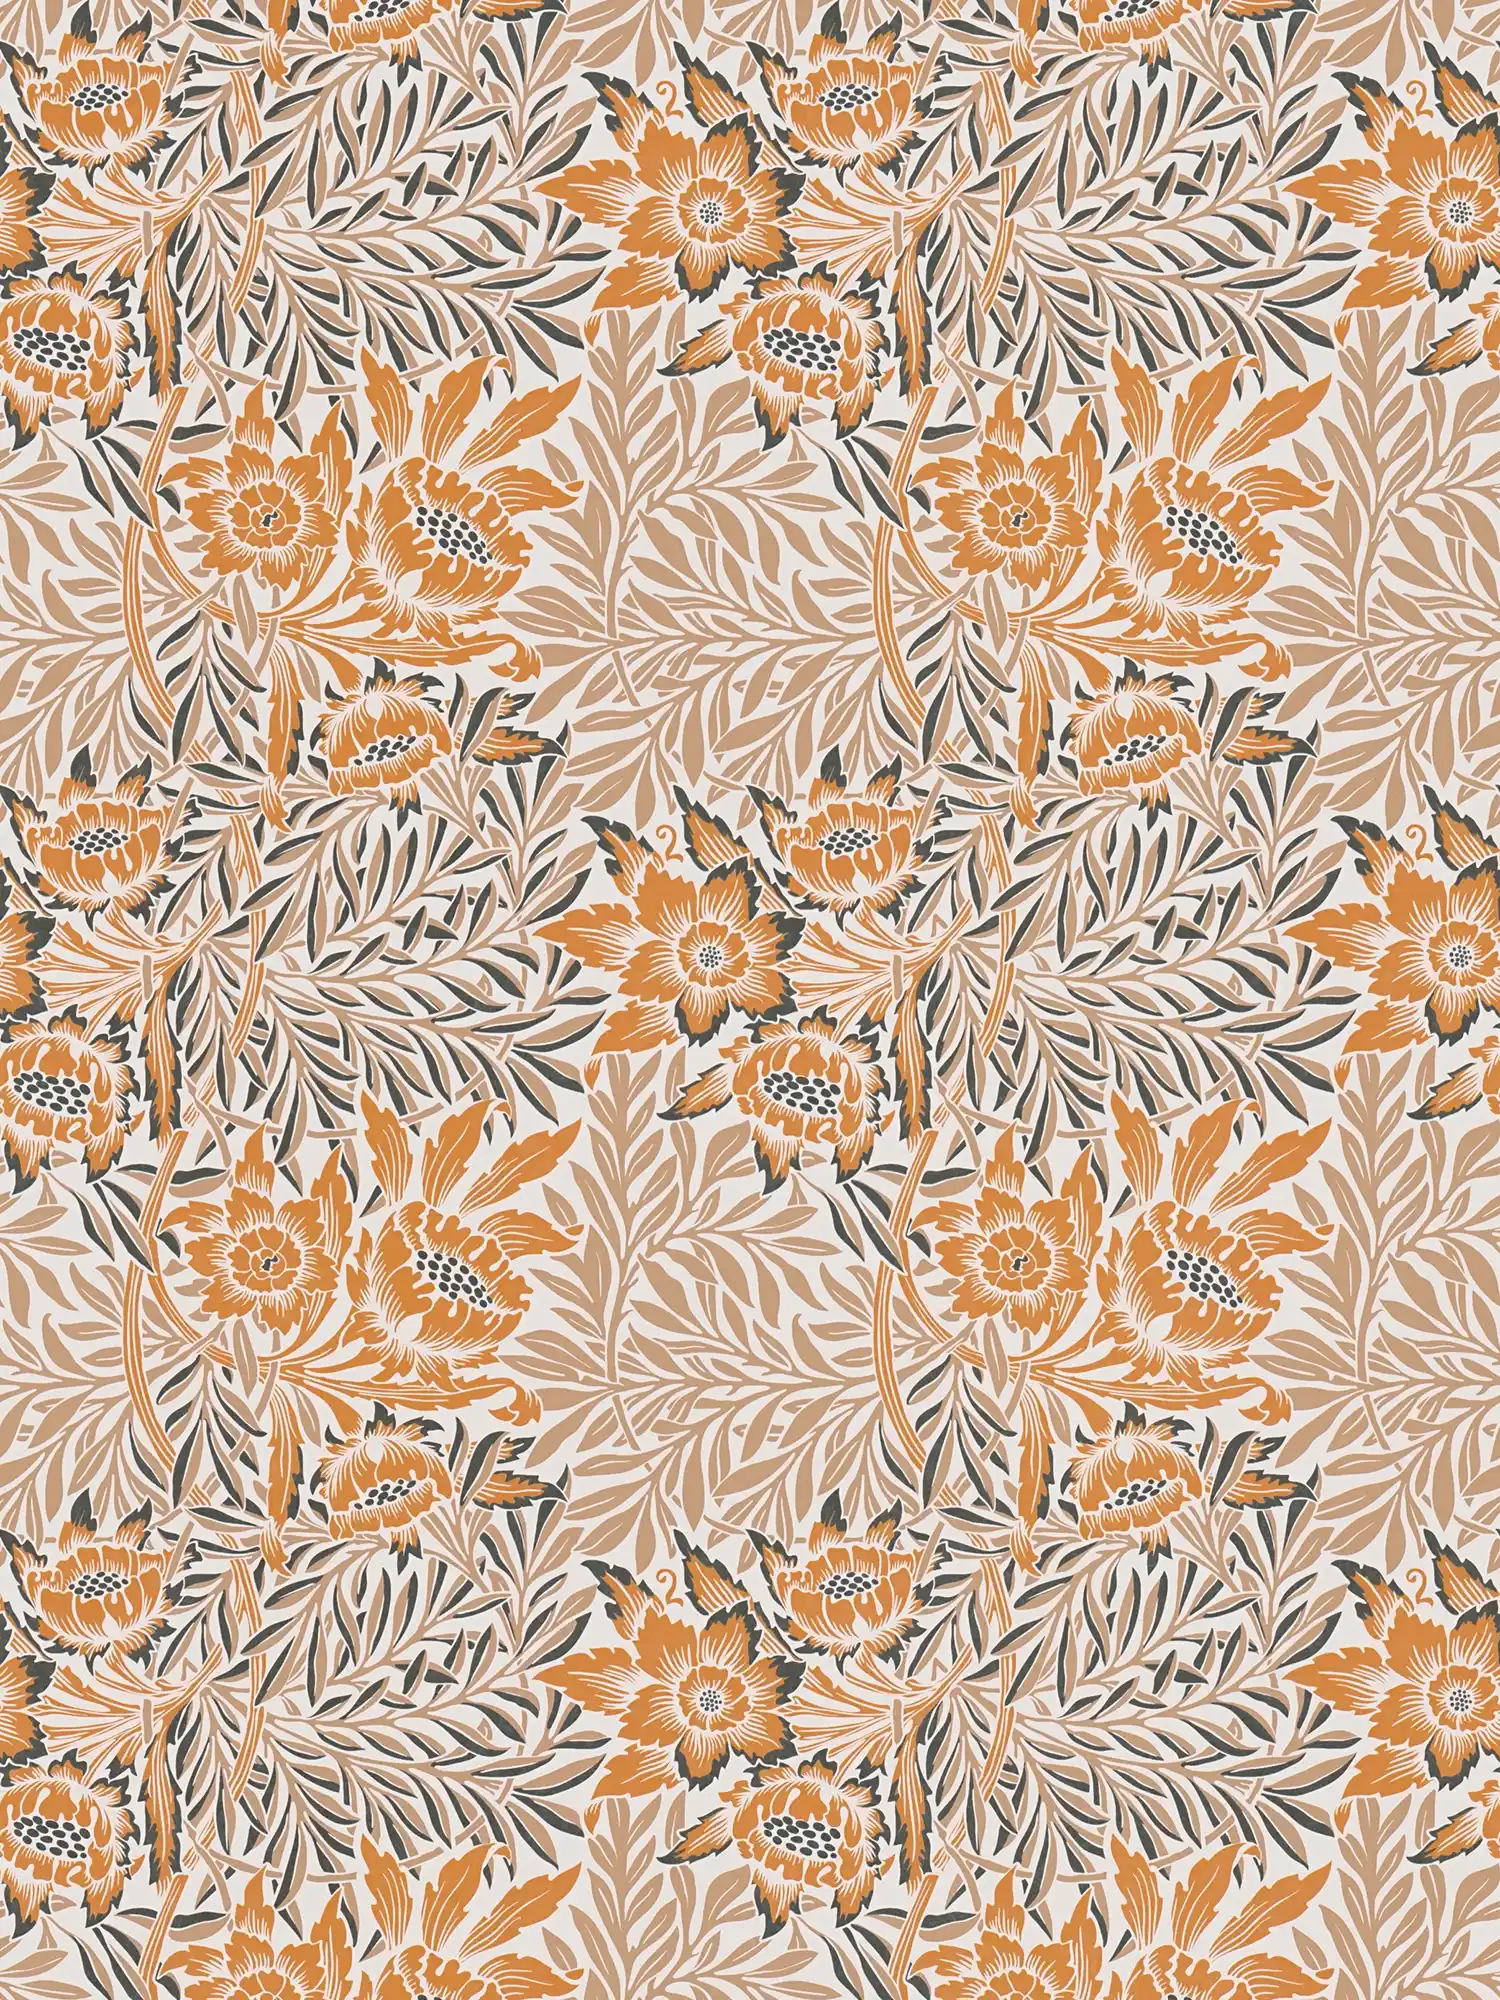         Papel pintado no tejido con flores y zarcillos de hojas - naranja, beige, blanco
    